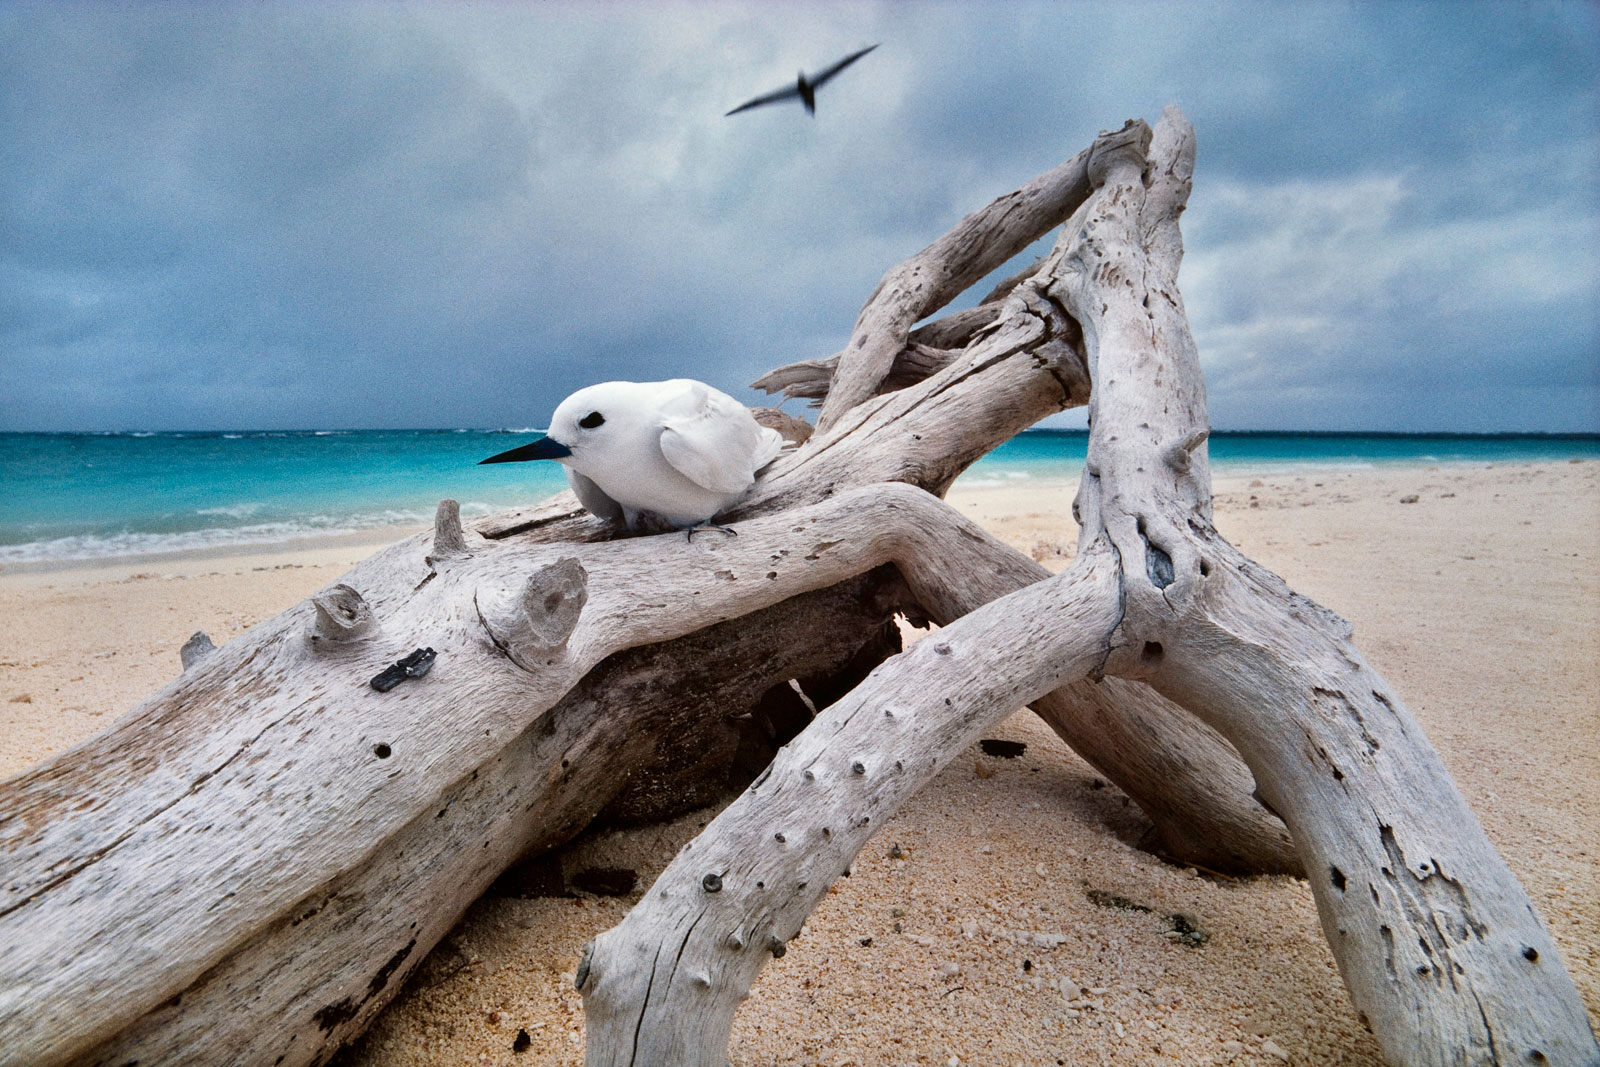 Fairy tern on driftwood nest, Hawaiian Leeward Islands